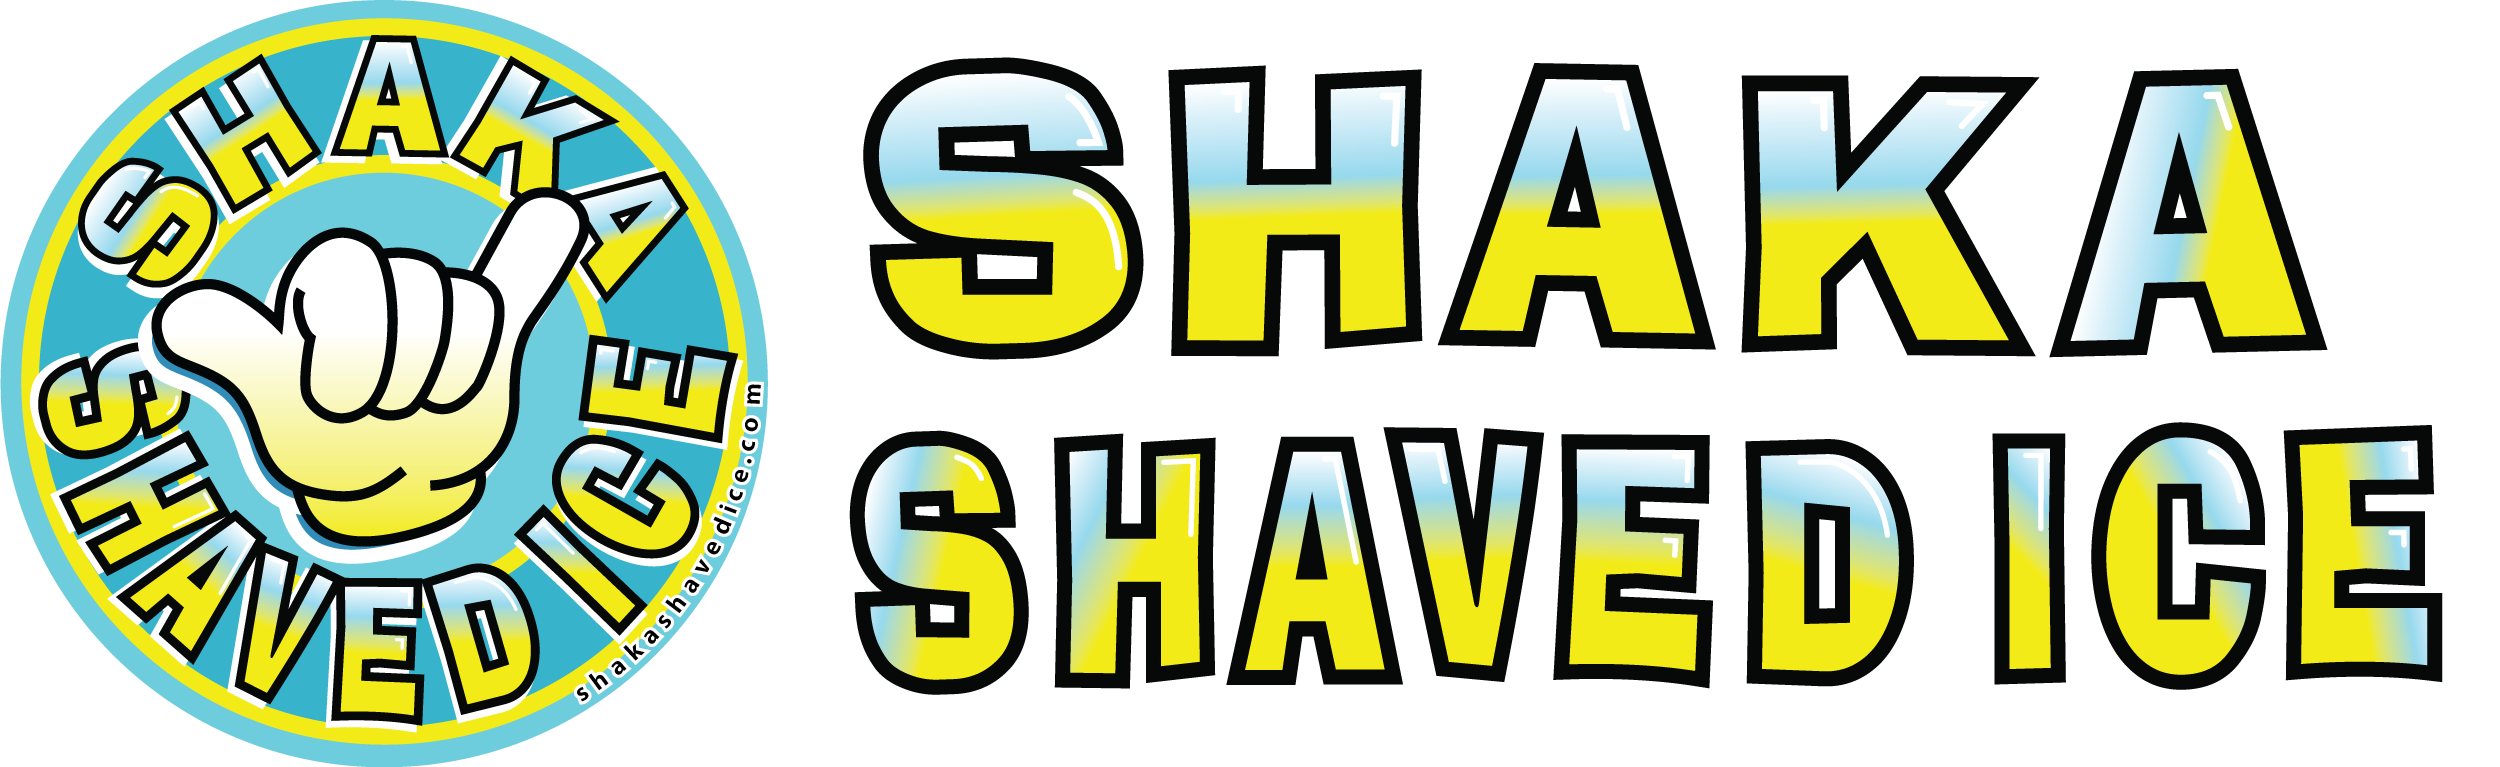 Shaka Shaved Ice Logo